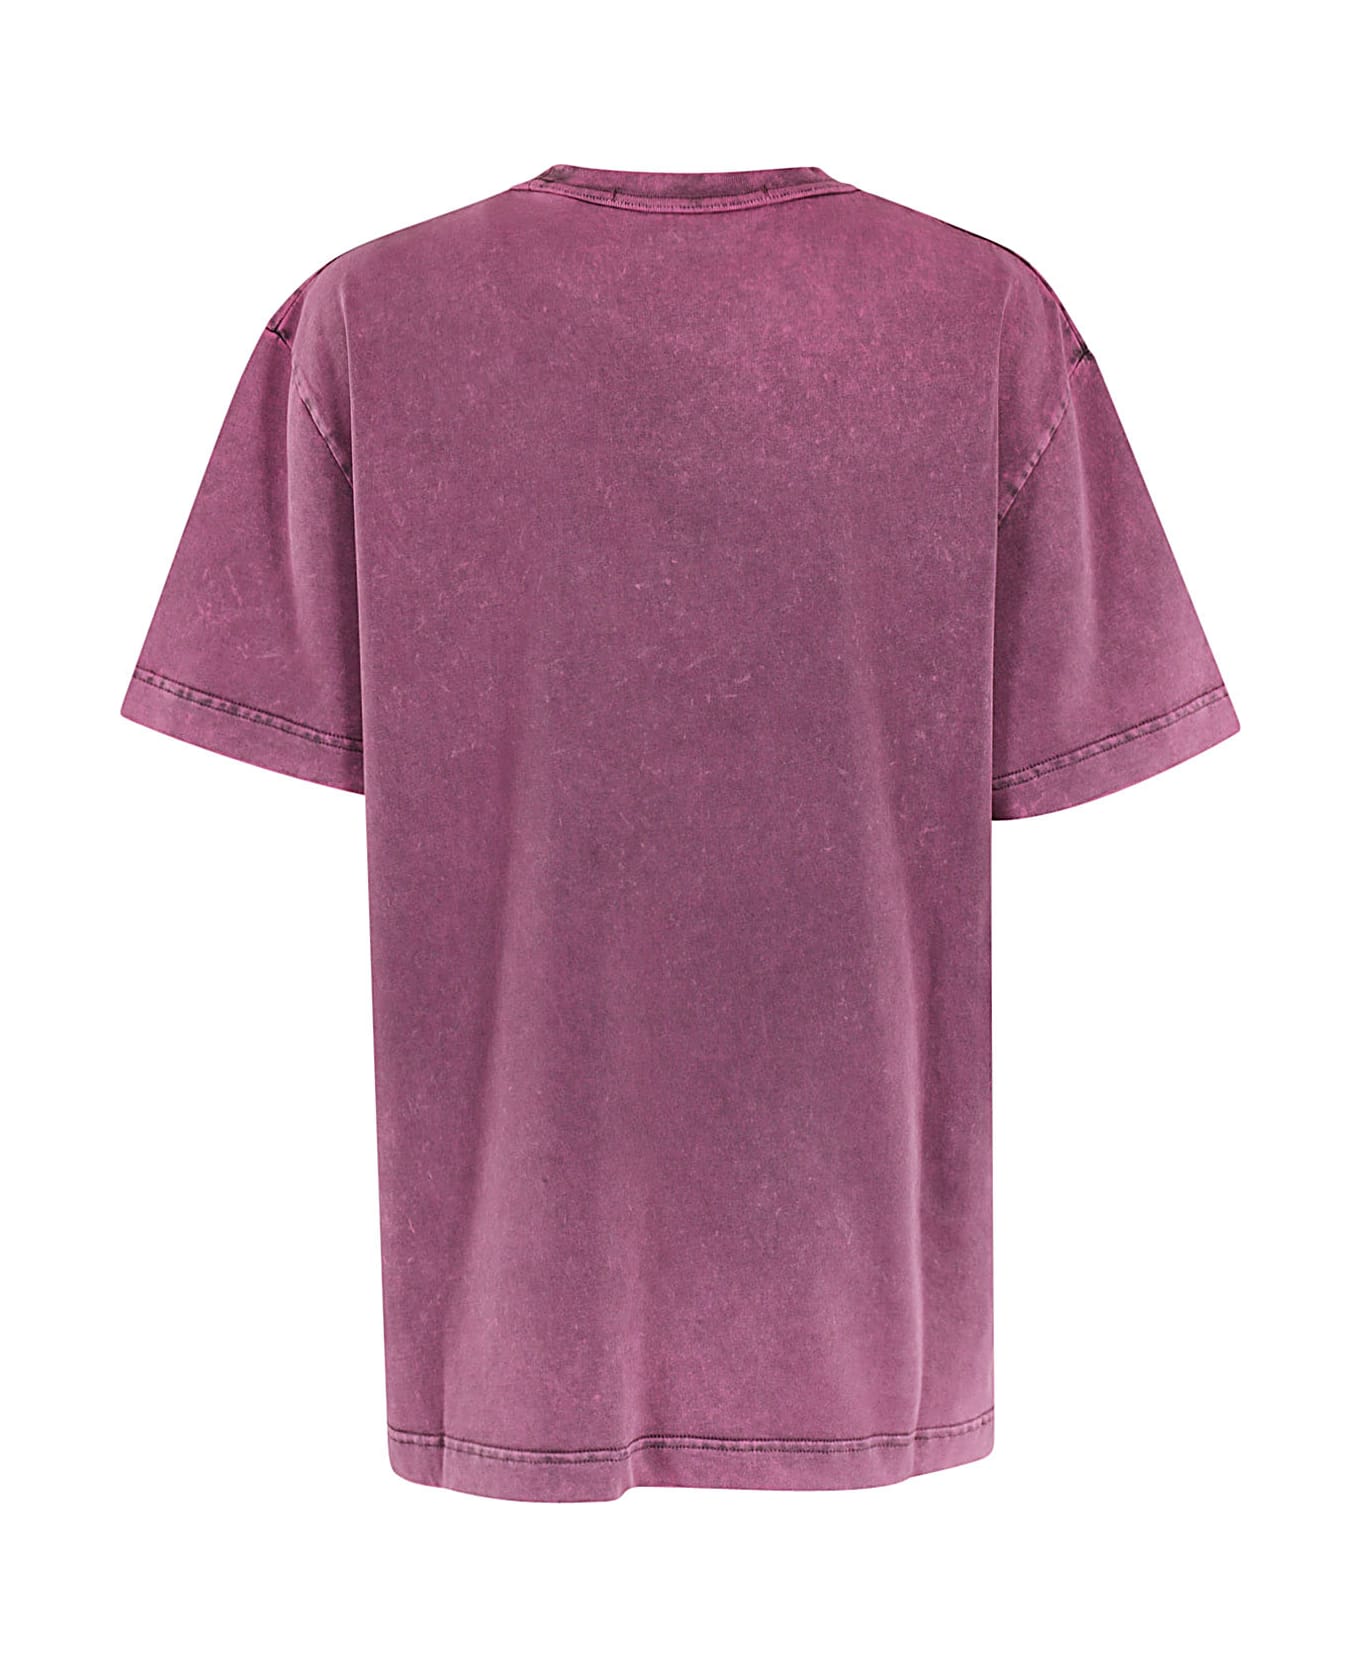 Alexander Wang Short Sleeve Logo - A Tシャツ